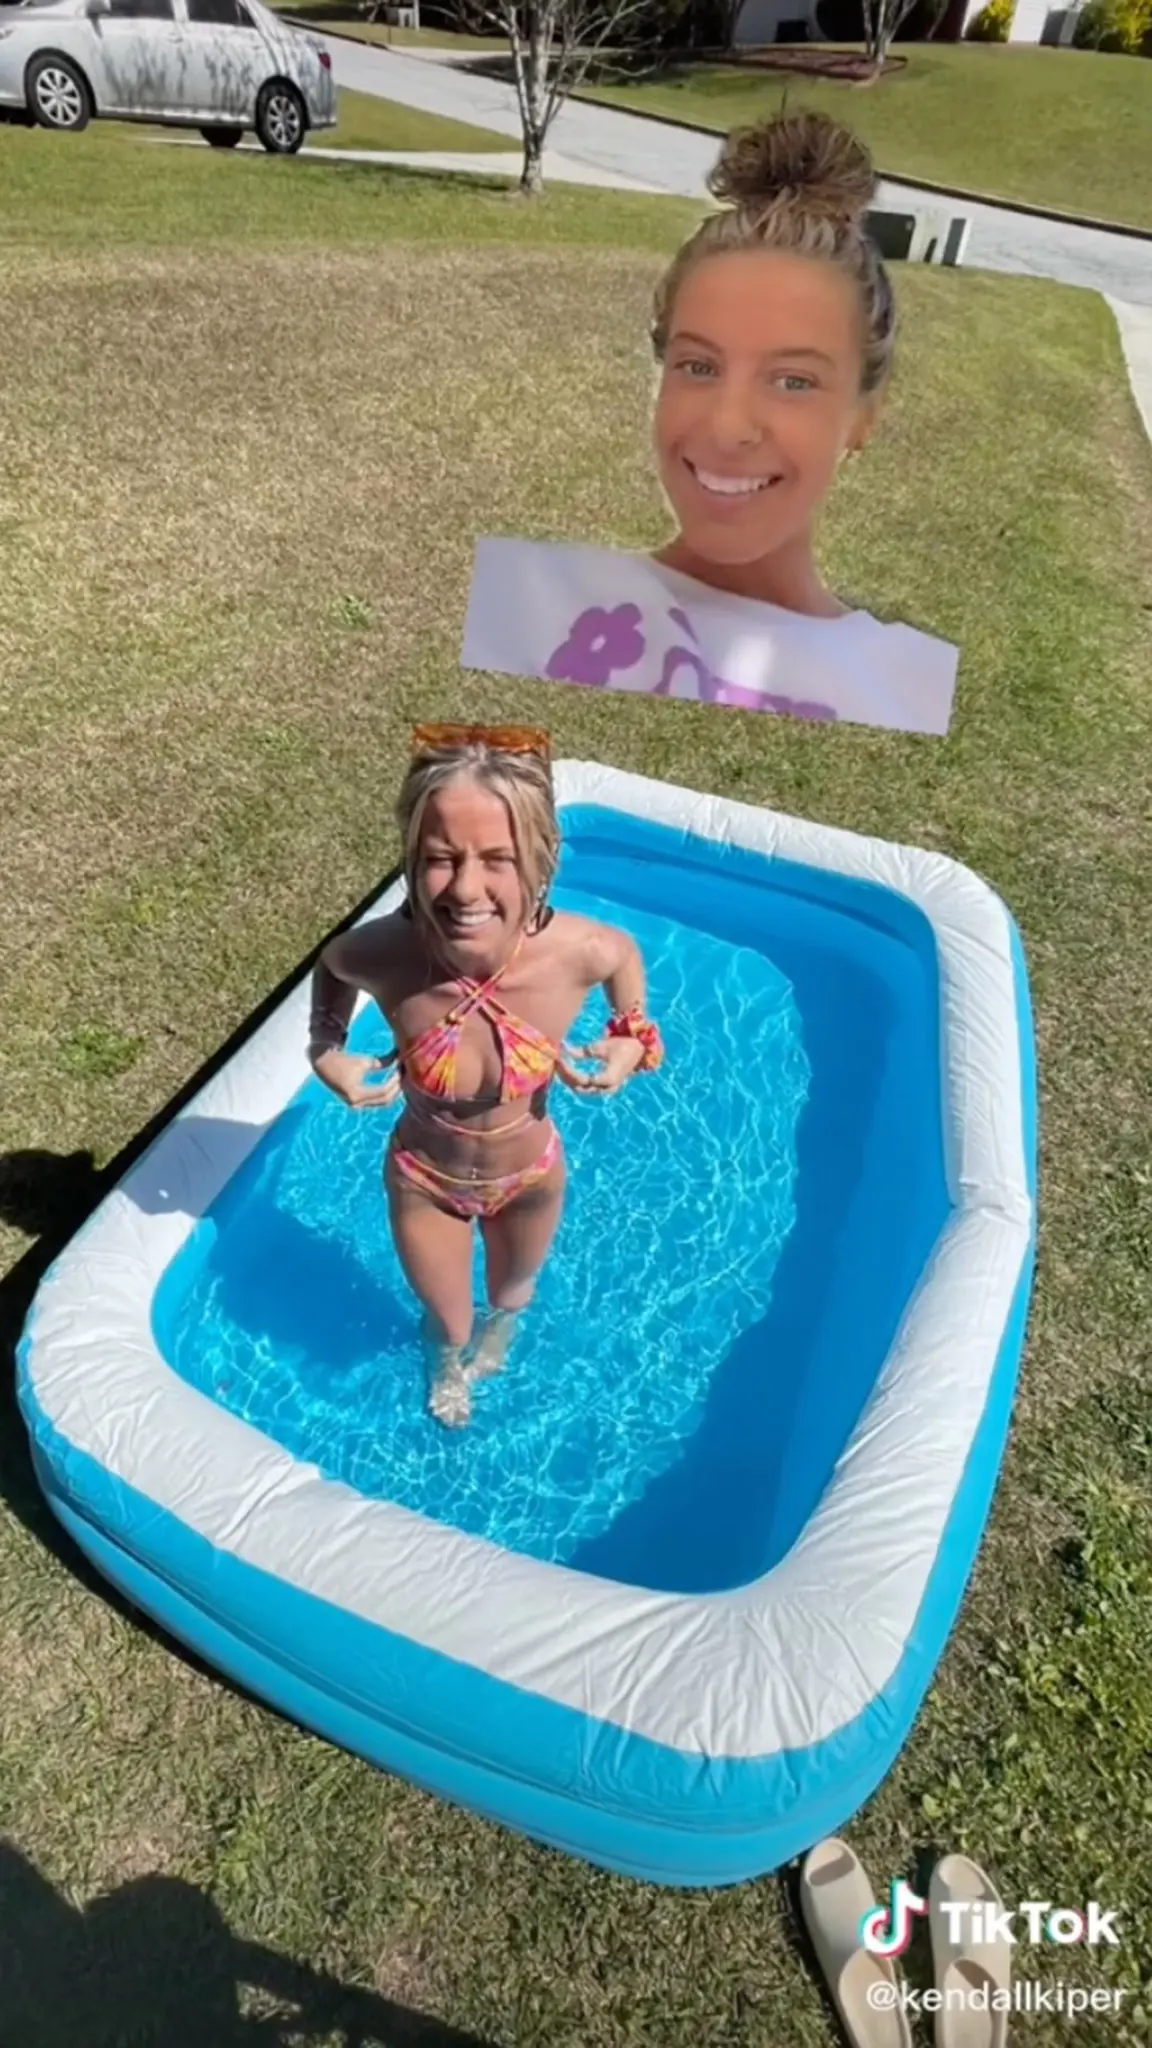 La realidad es que la influencer compró una piscina inflable para tomarse la foto.